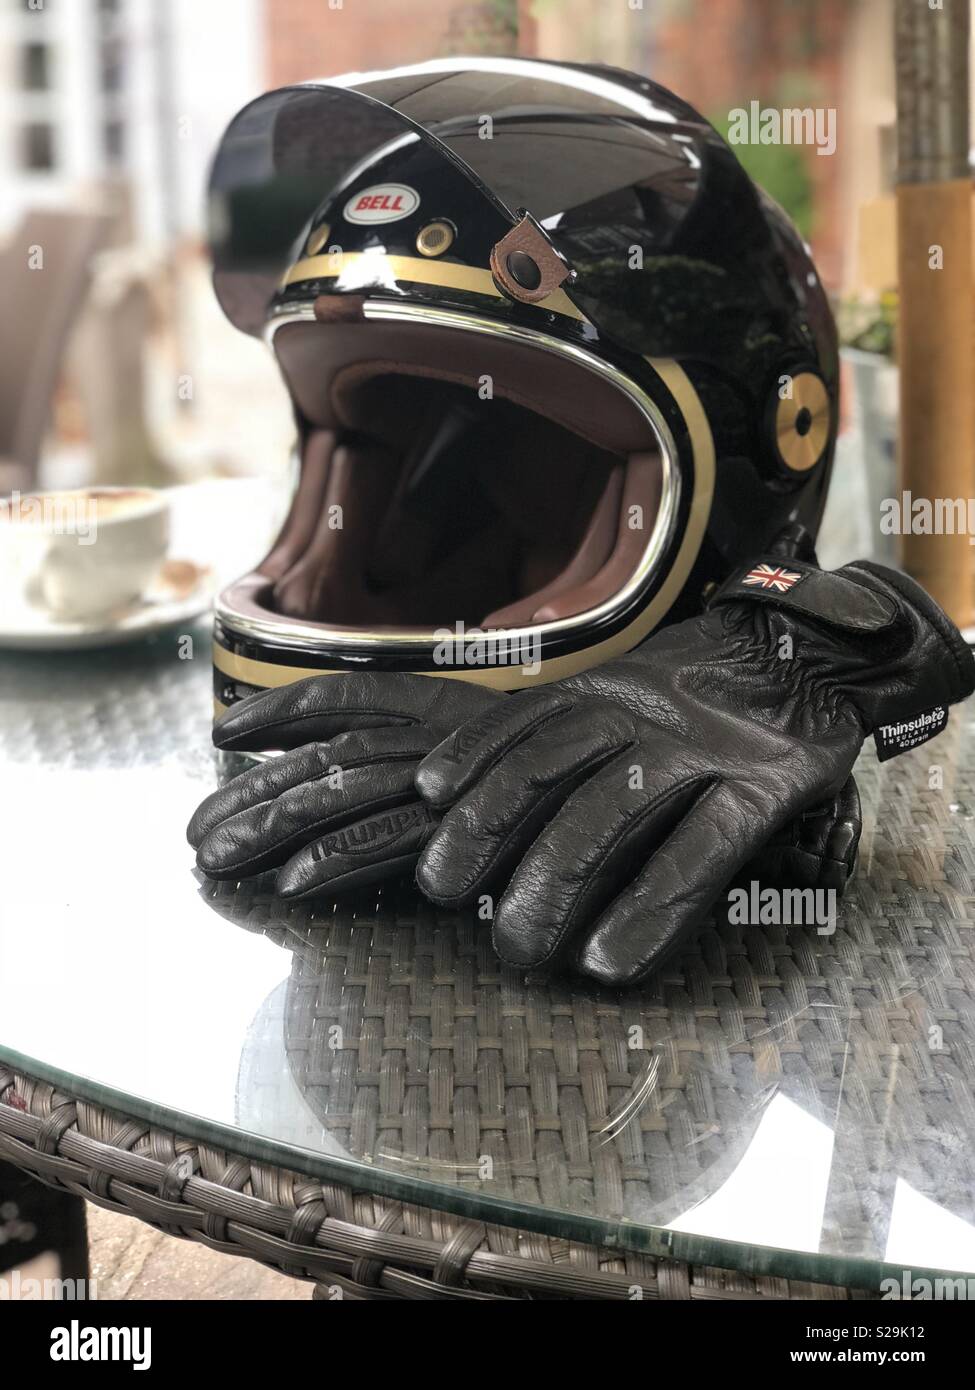 Bell Bullitt Motorrad Helm und Triumph Motorrad Handschuhe Stockfotografie  - Alamy